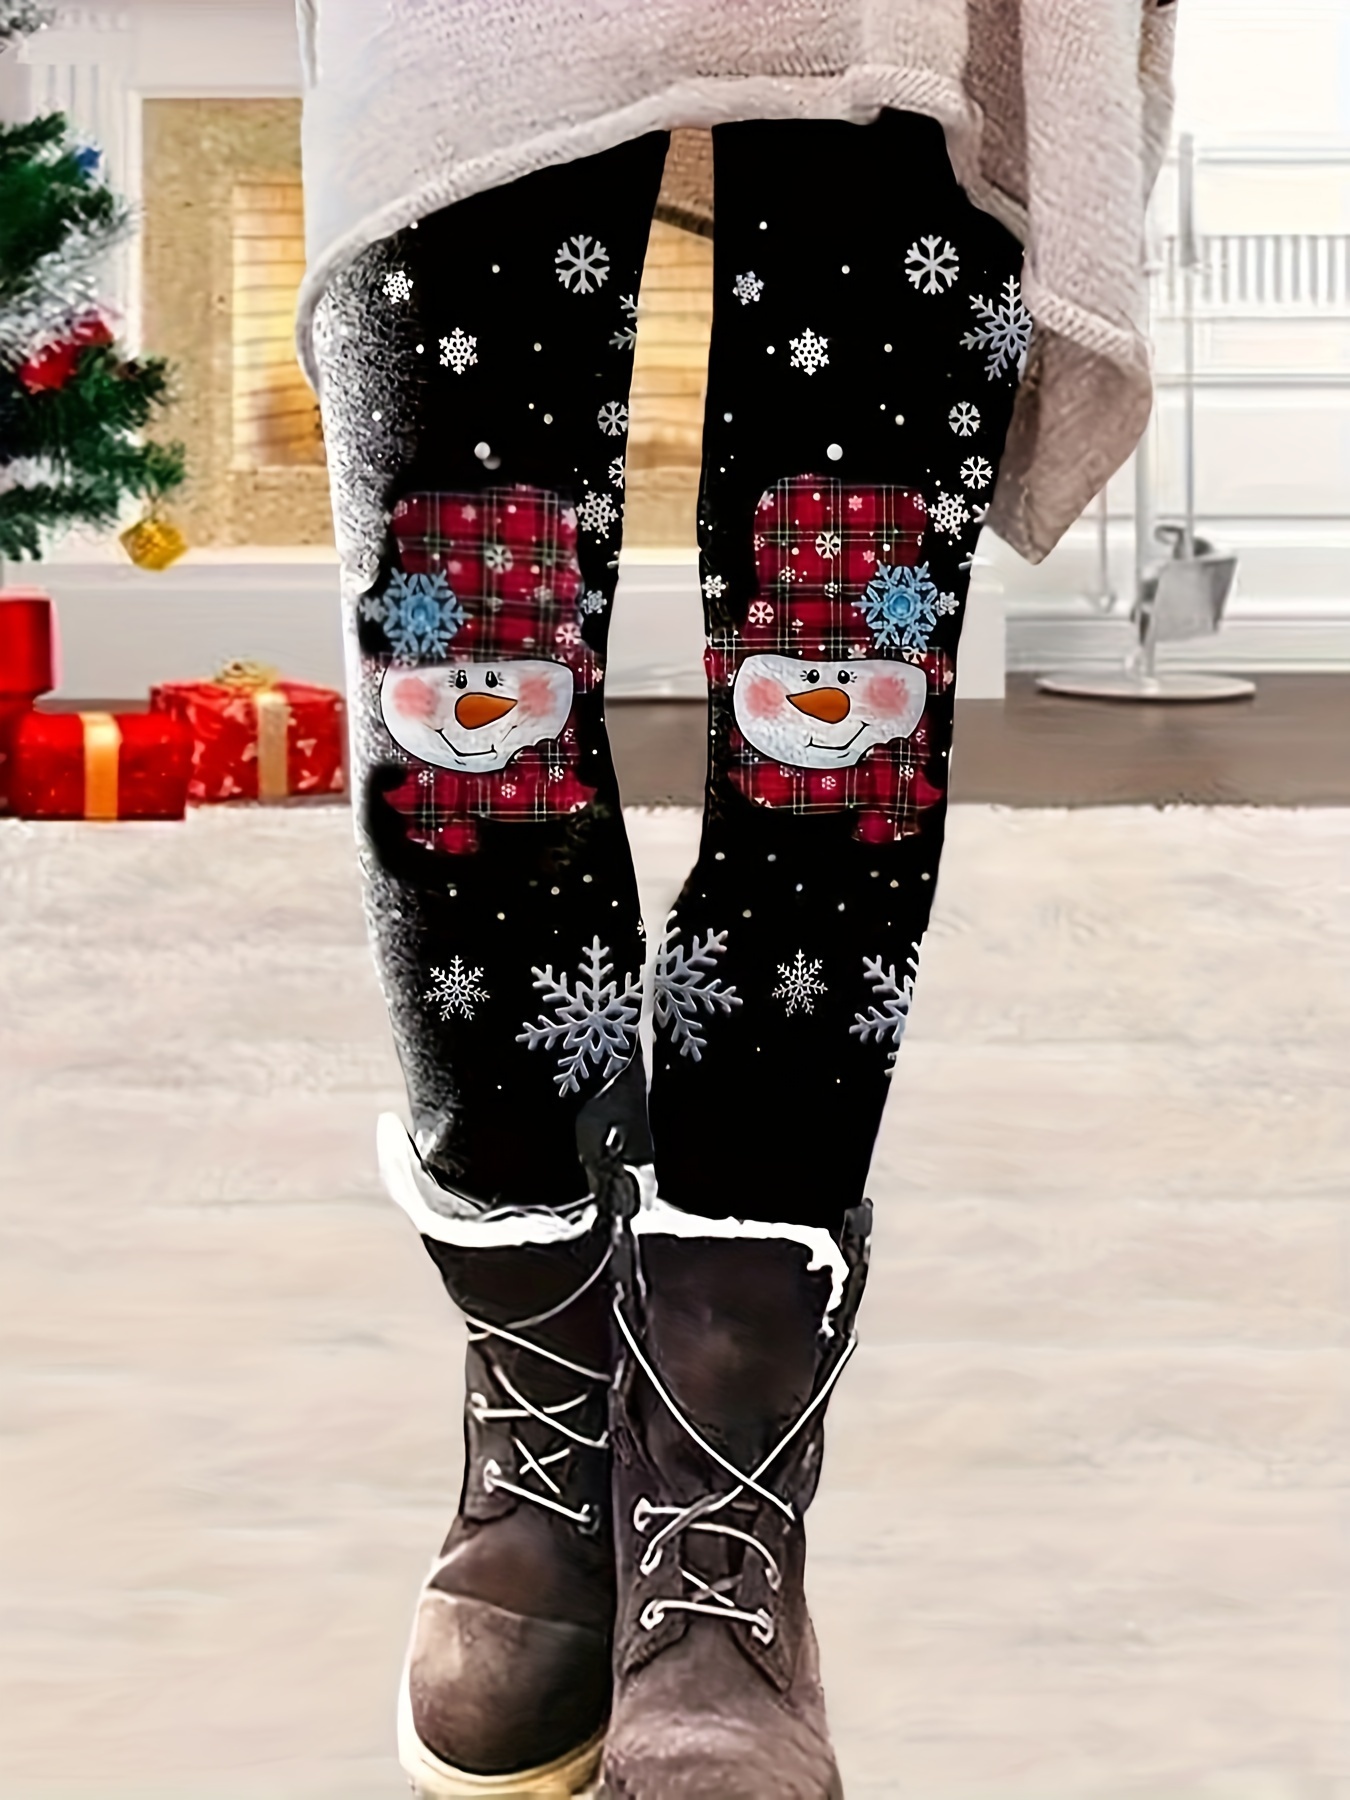 XMAS Leggings Womens Christmas Elastic Snowflake Pants Stocking